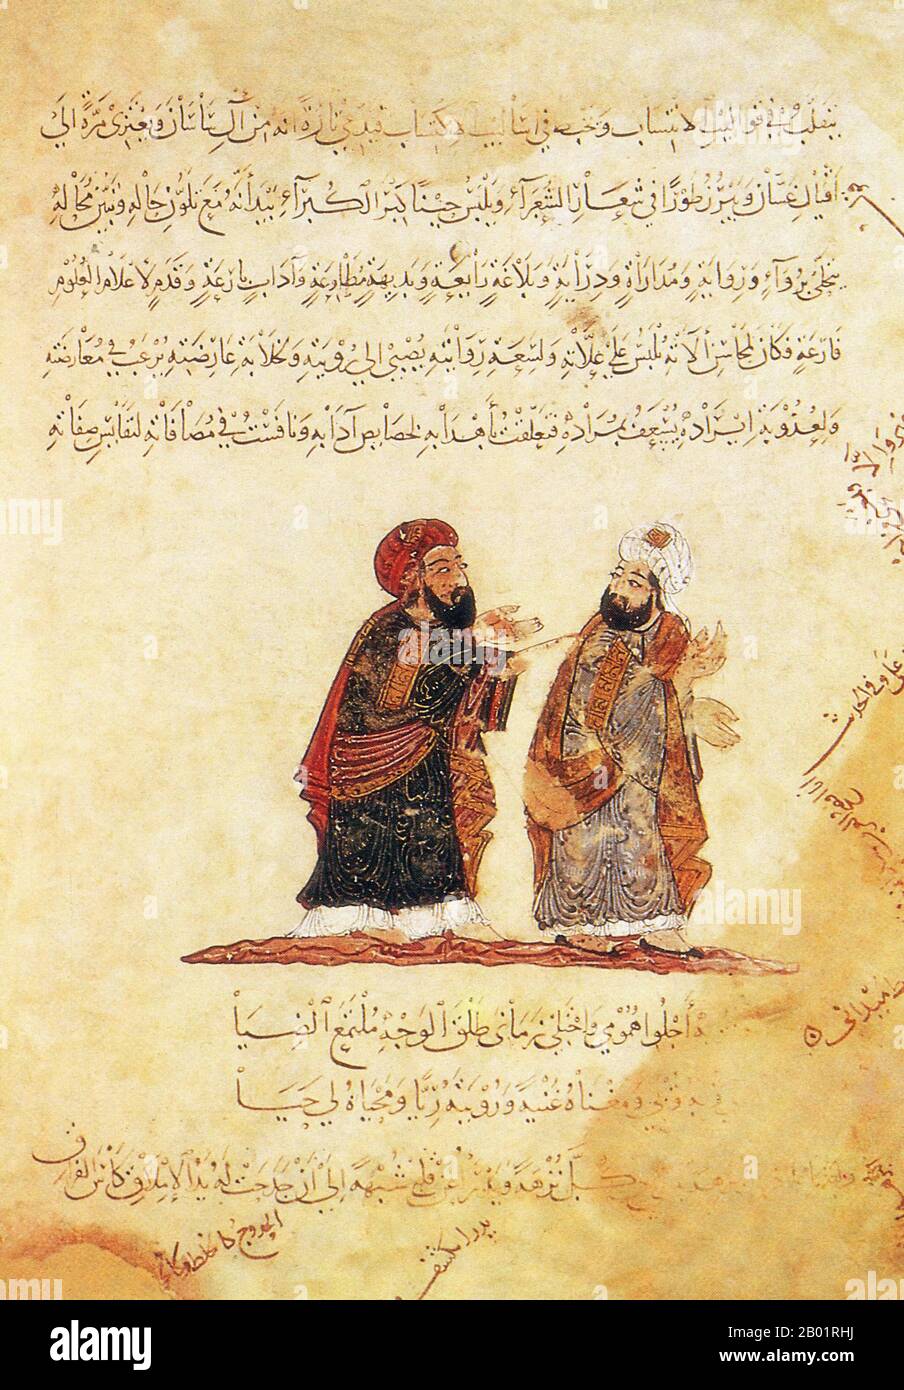 Iraq: Due uomini in conversazione. Pittura in miniatura di Yahya ibn Mahmud al-Wasiti, 1237 d.C. Yahyâ ibn Mahmûd al-Wâsitî è stato un artista arabo islamico del XIII secolo. Al-Wasiti è nato a Wasit, nel sud dell'Iraq. Era noto per le sue illustrazioni del Maqam di al-Hariri. I Maqāma (letteralmente "assemblee") sono un genere letterario arabo (originariamente) di prosa rimata con intervalli di poesia in cui la stravaganza retorica è evidente. Si dice che l'autore del X secolo Badī' al-Zaman al-Hamadhāni abbia inventato la forma, che fu estesa da al-Hariri di Bassora nel secolo successivo. Foto Stock